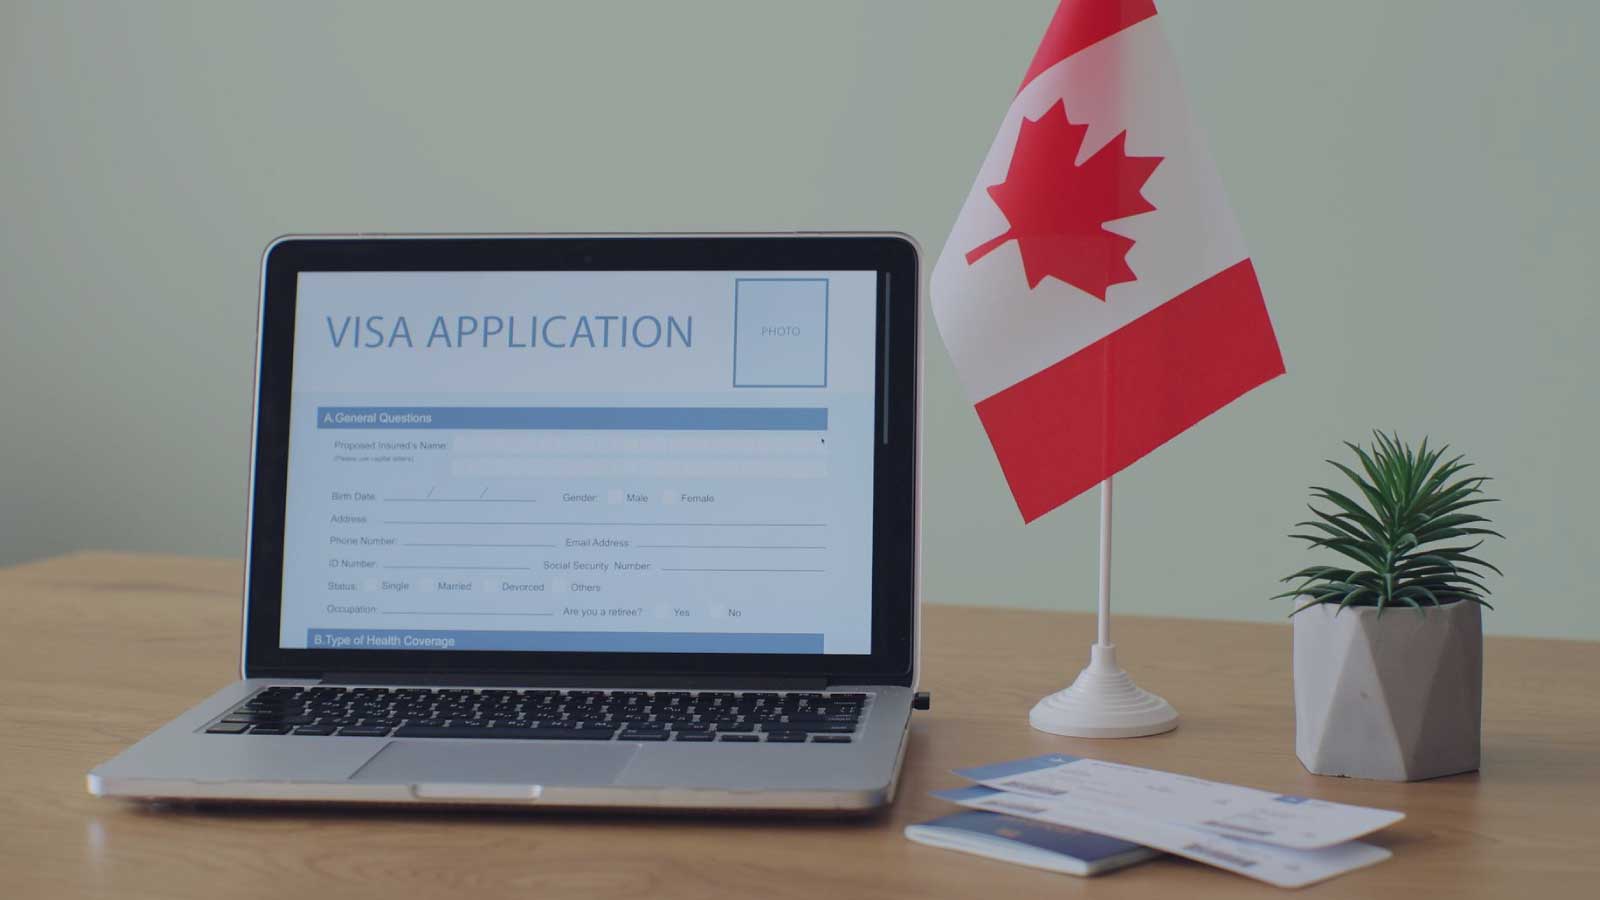 بررسی شرایط و هزینه مورد نیاز برای دریافت پاسپورت کشور کانادا پس از اخذ حق شهروندی